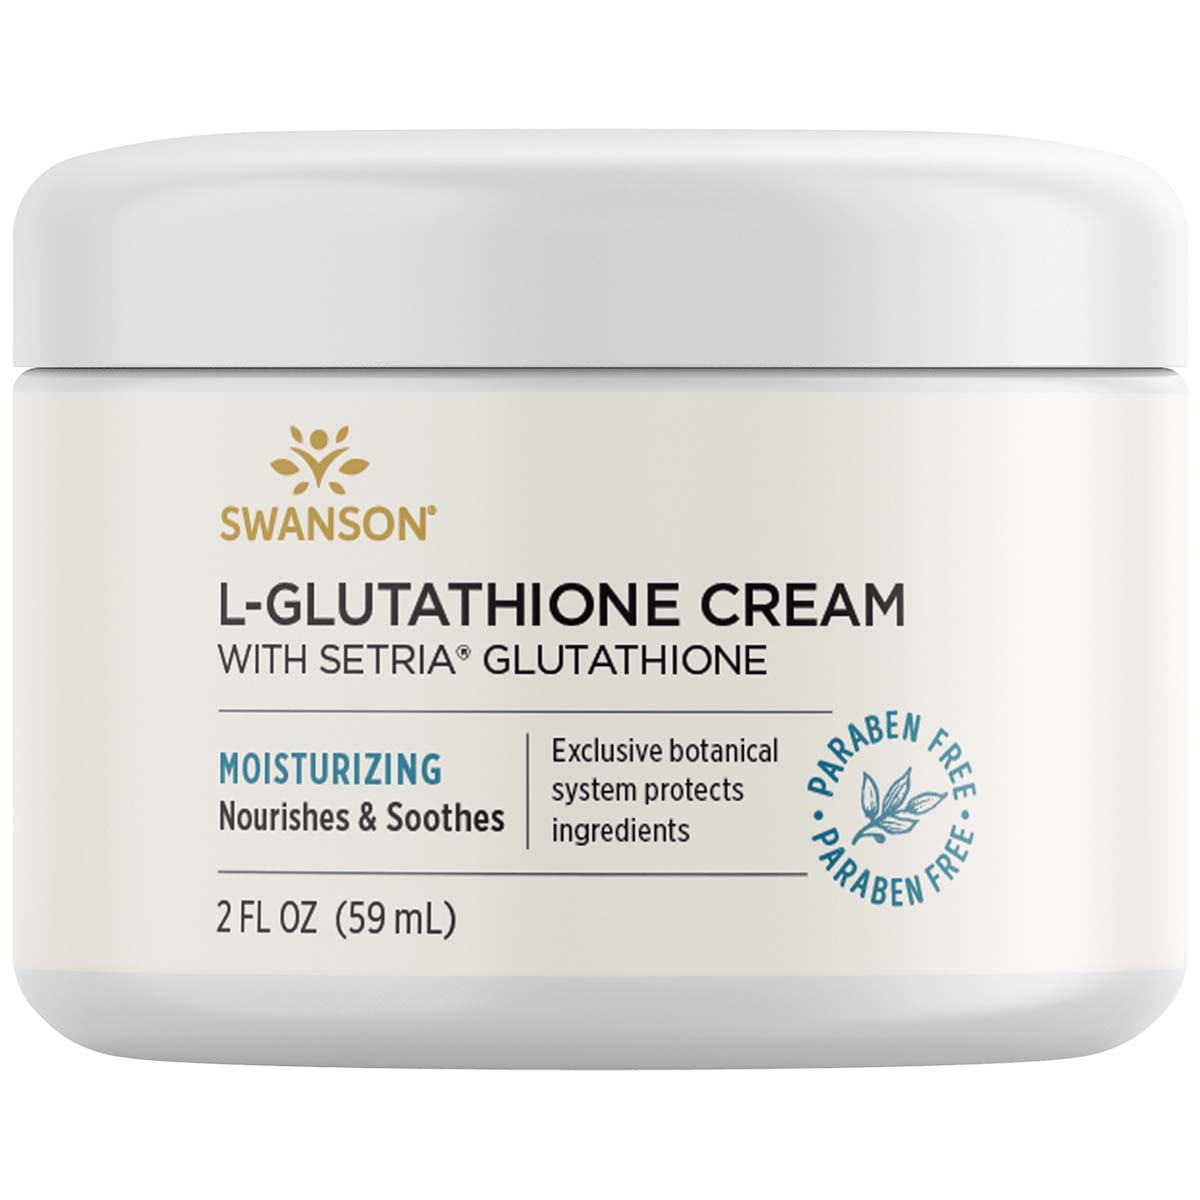 Swanson L-Glutathione Cream with Setria Glutathione 59 ML